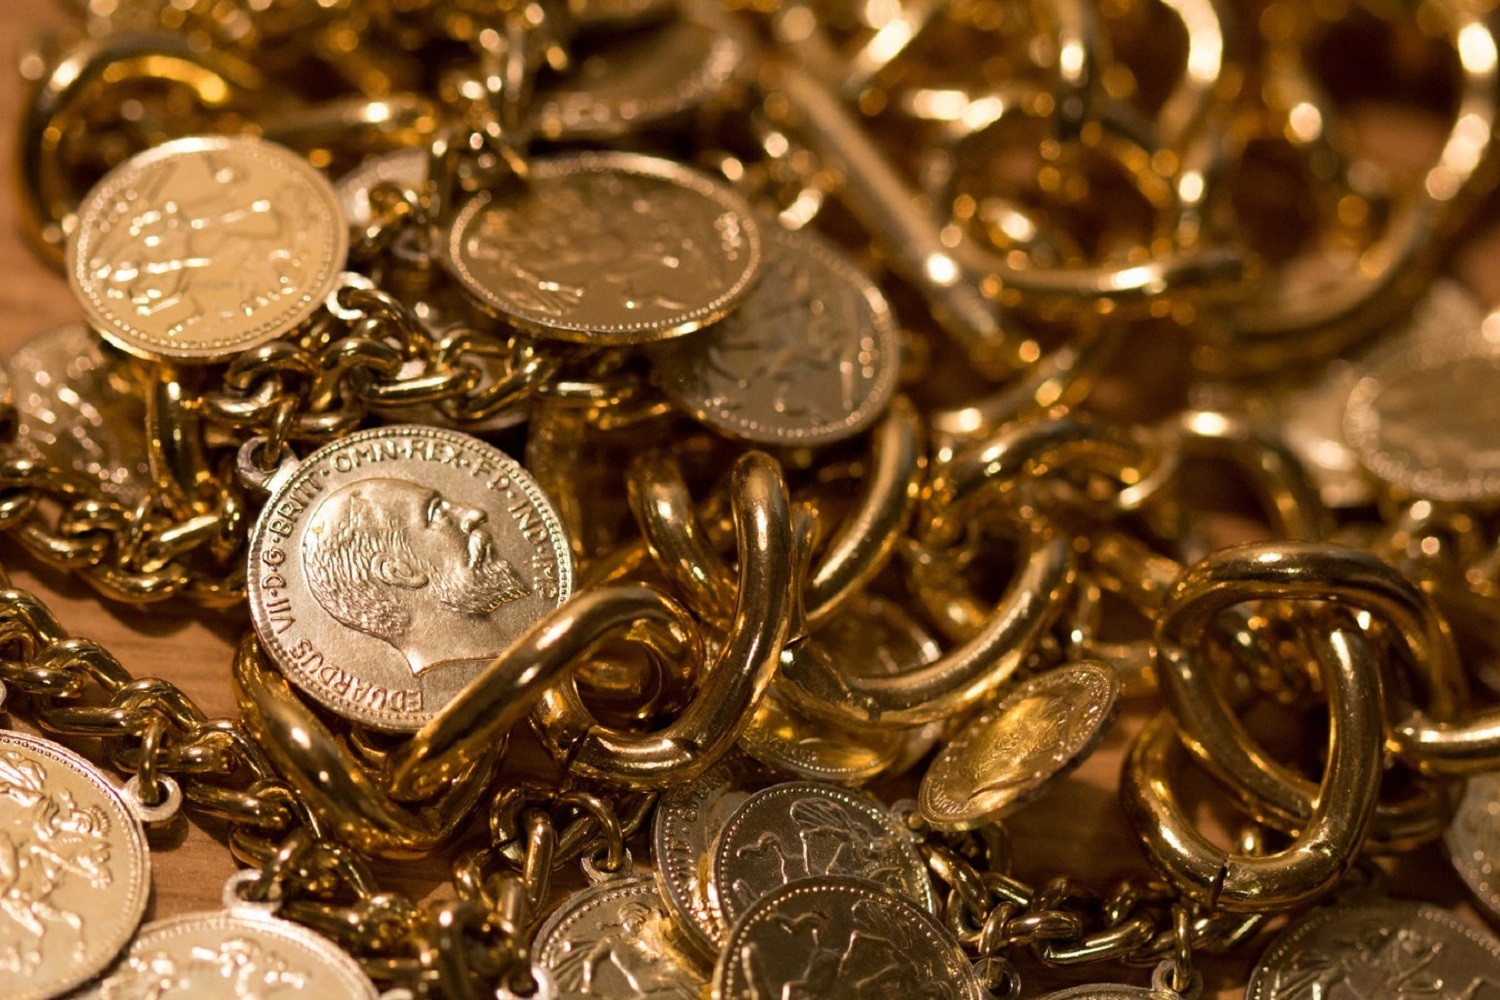 W wodzie morskiej znajduje się złoto o wartości ponad biliarda dolarów. Czy uda się je wydobyć?